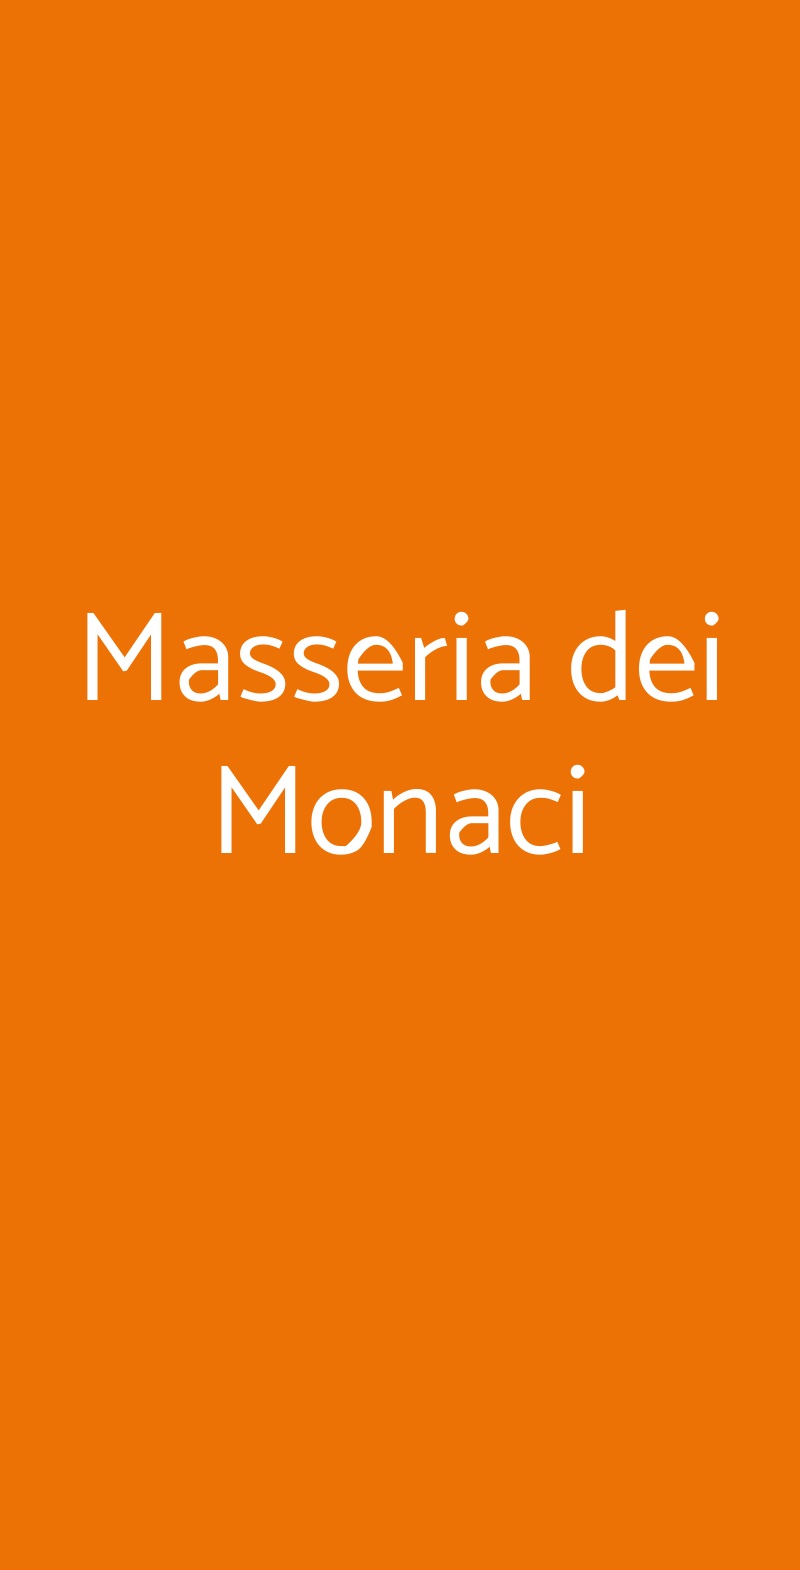 Masseria dei Monaci San Potito Sannitico menù 1 pagina